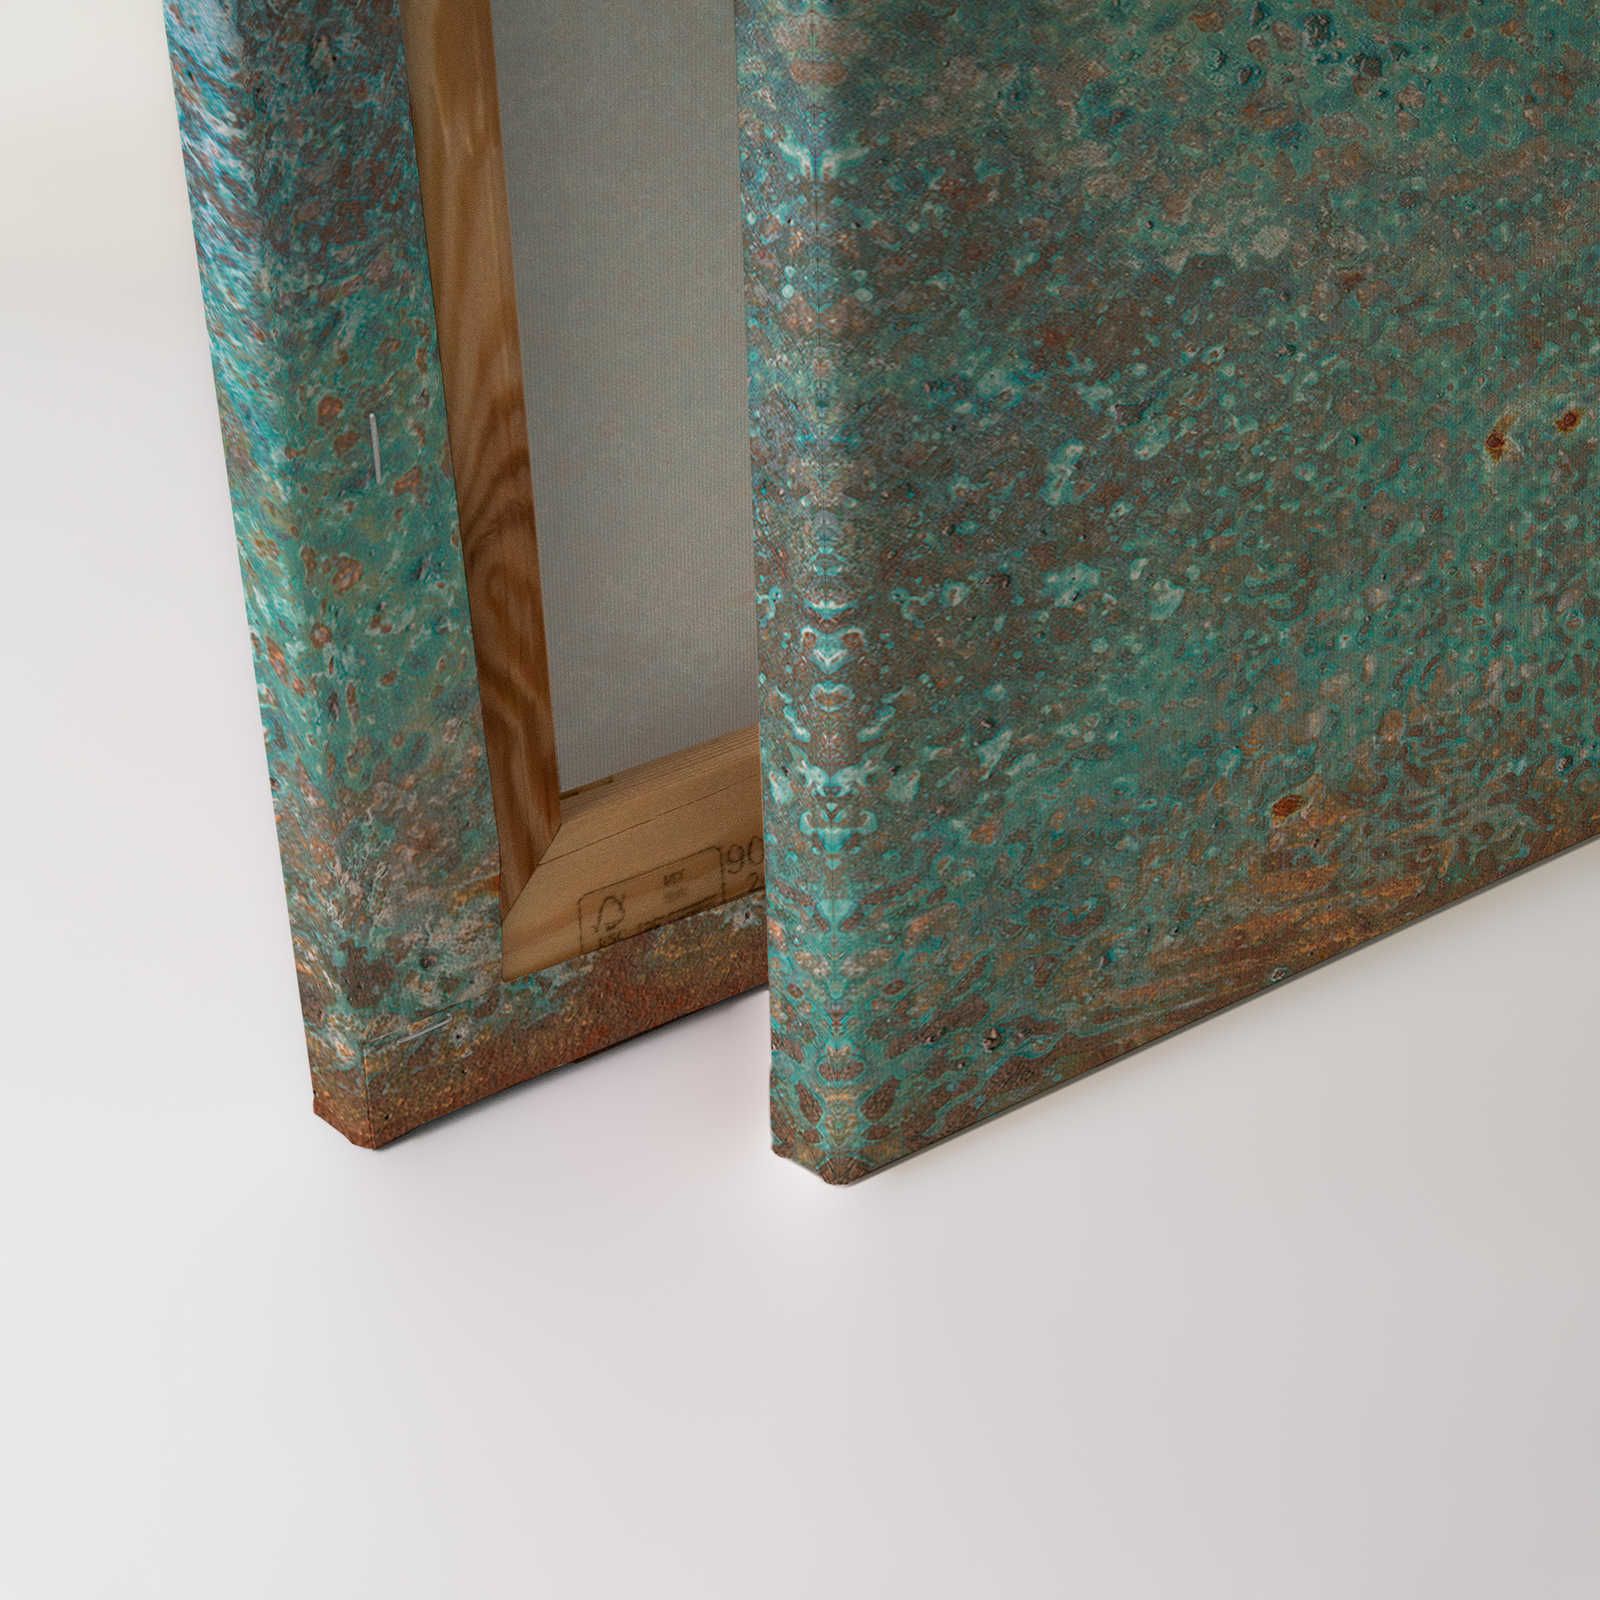             Toile aspect métal patine turquoise avec rouille - 1,20 m x 0,80 m
        